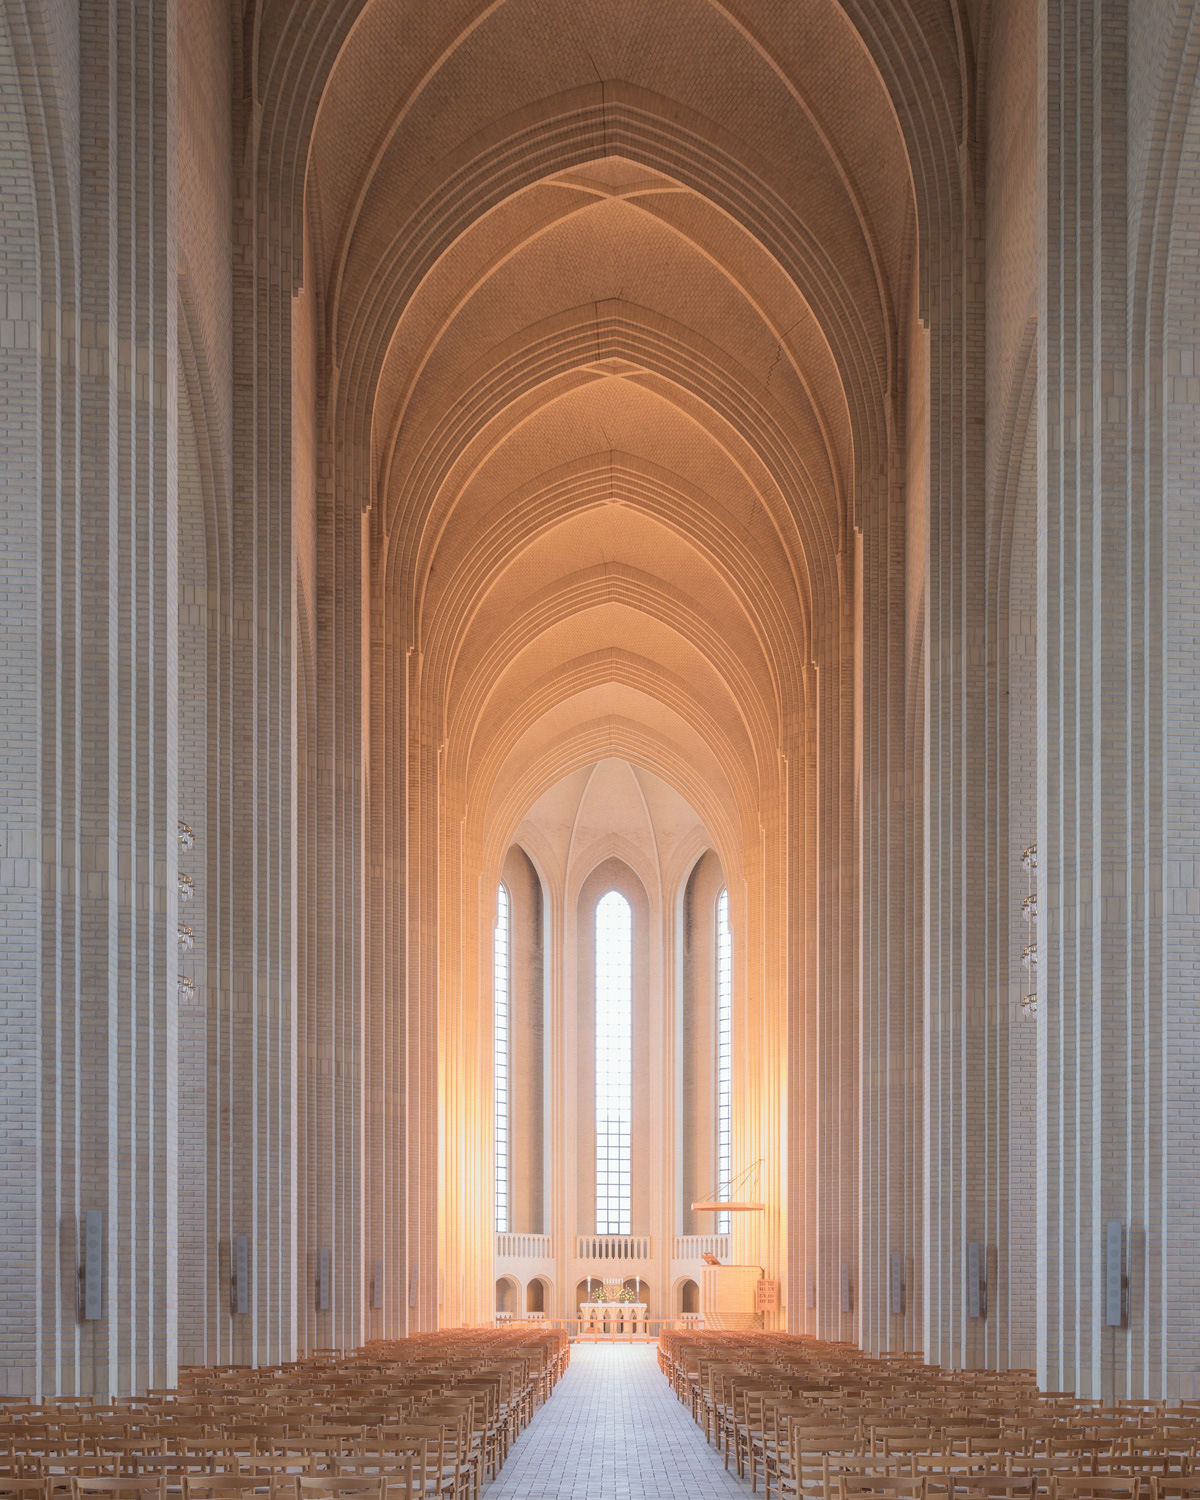 Fotos espetaculares da rara Igreja Expressionista de Copenhague 01